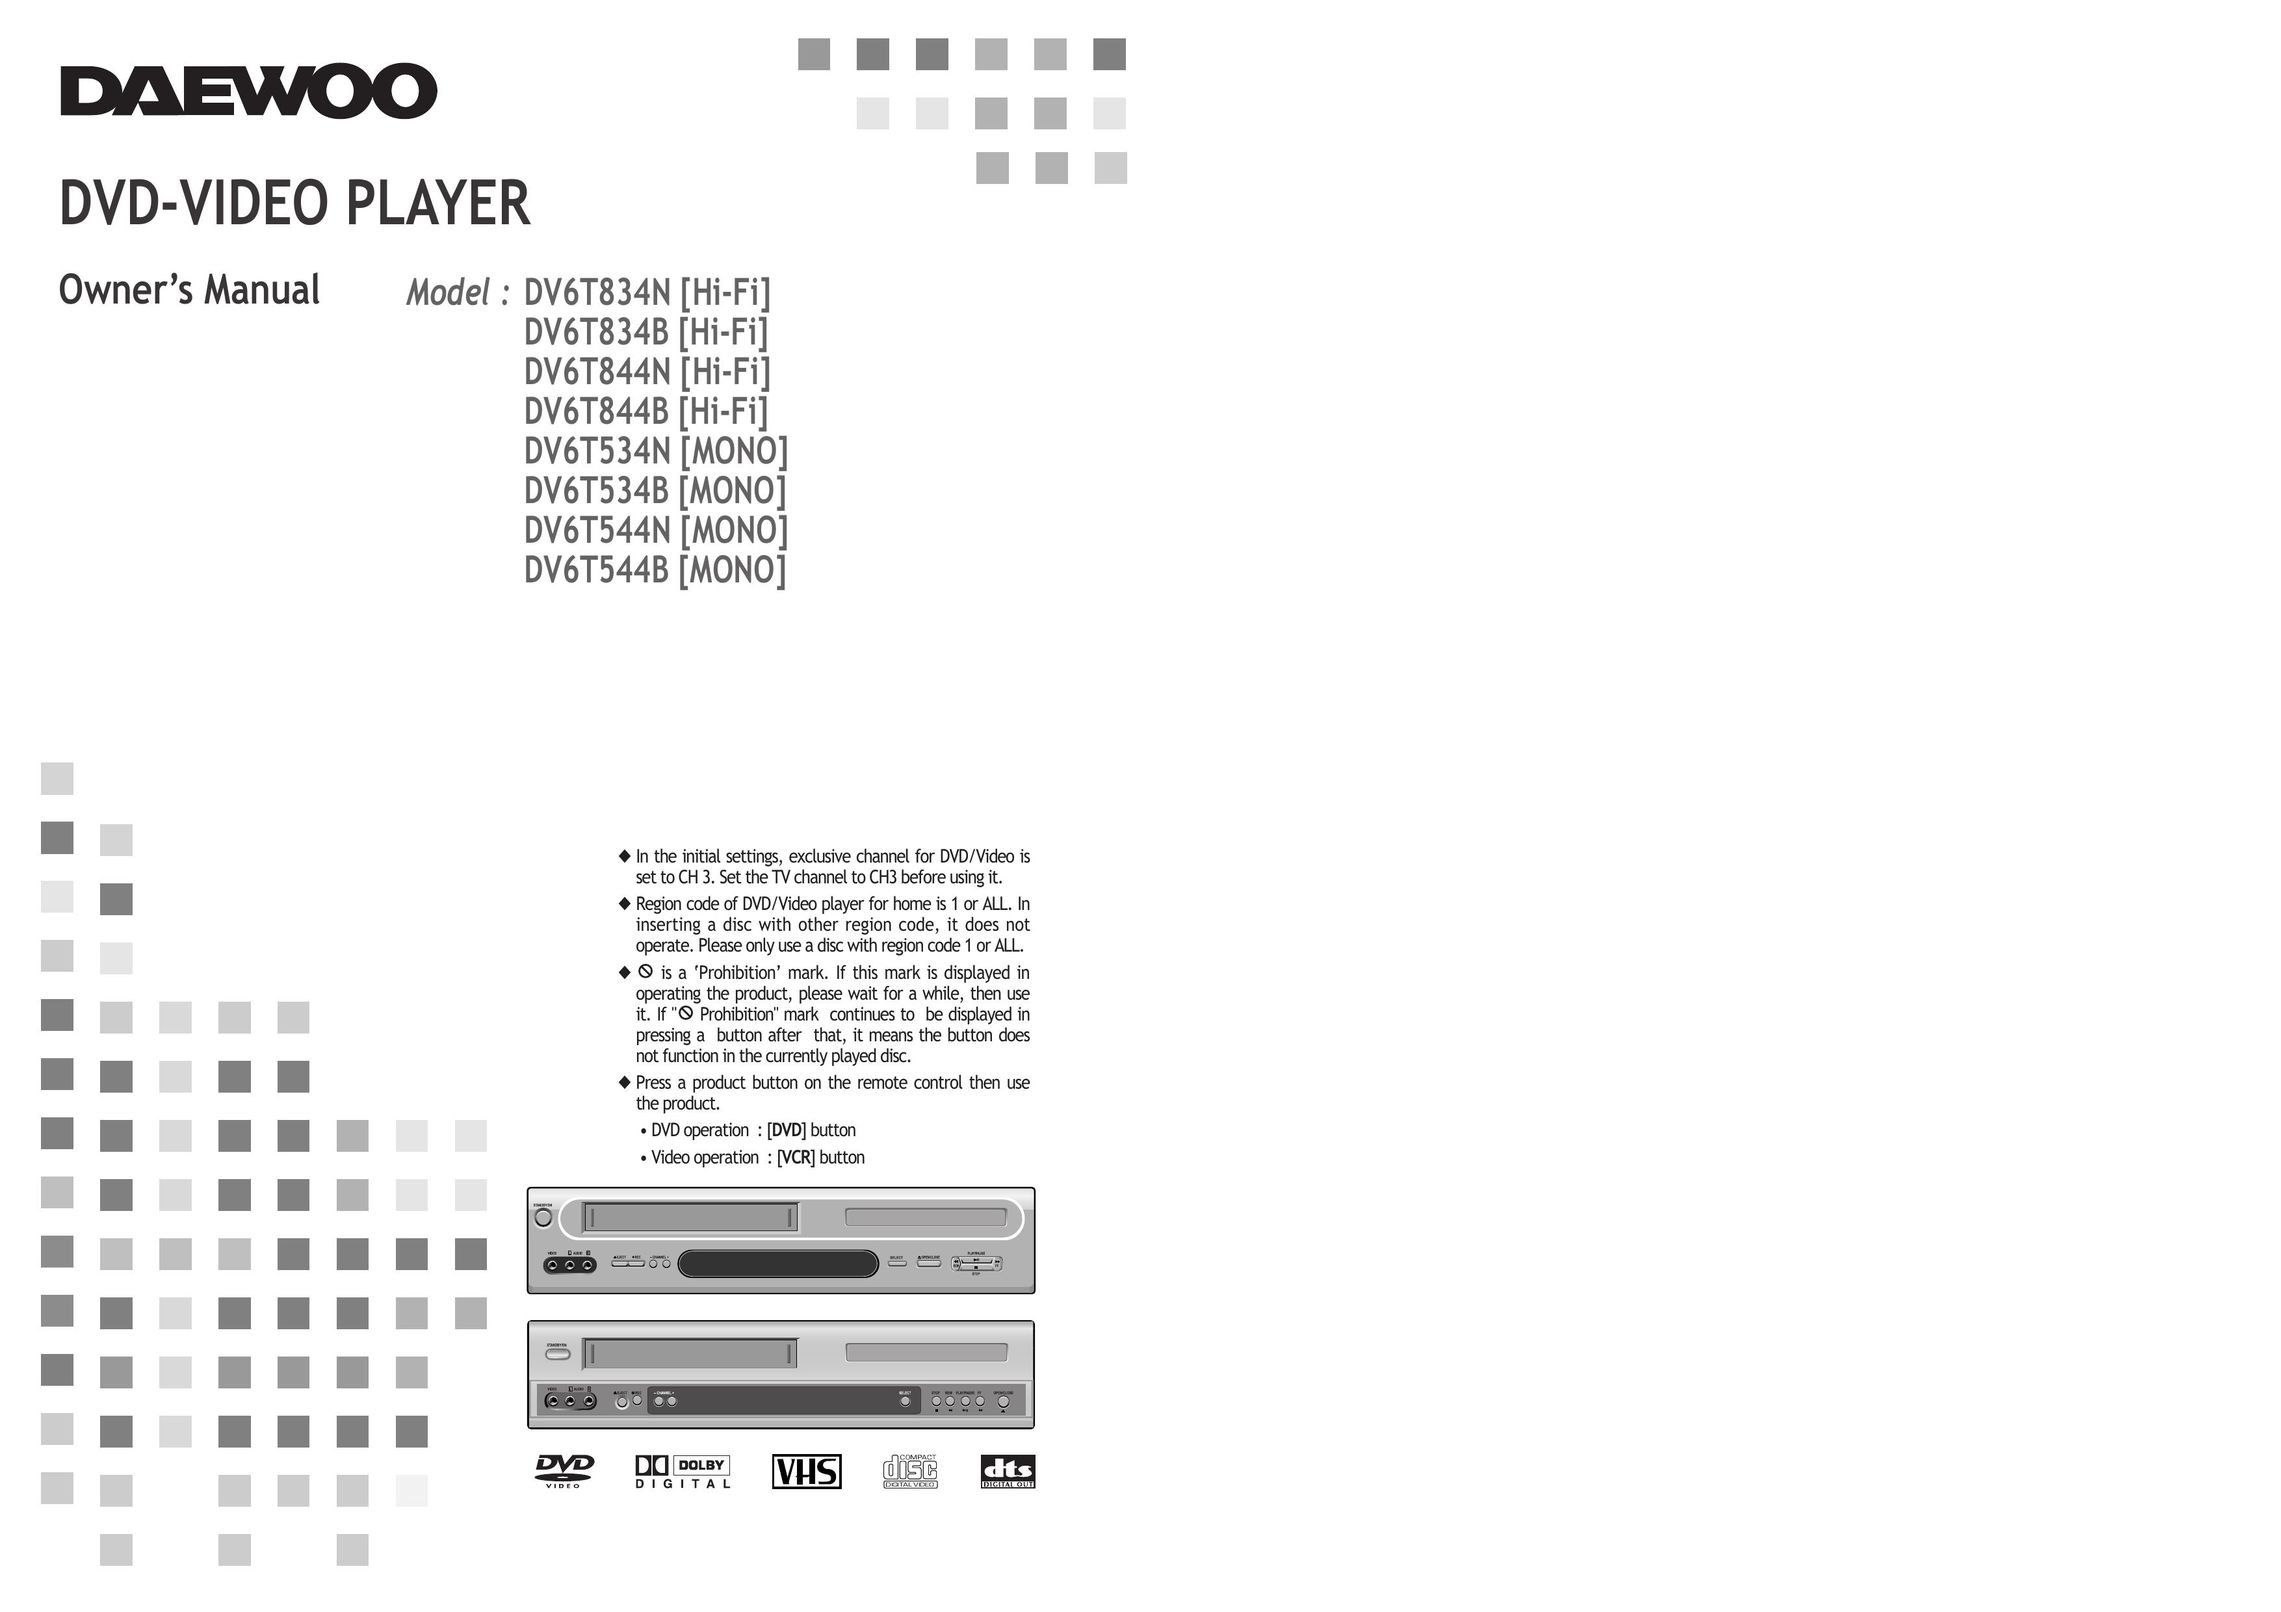 Daewoo DV6T544B DVD Player User Manual